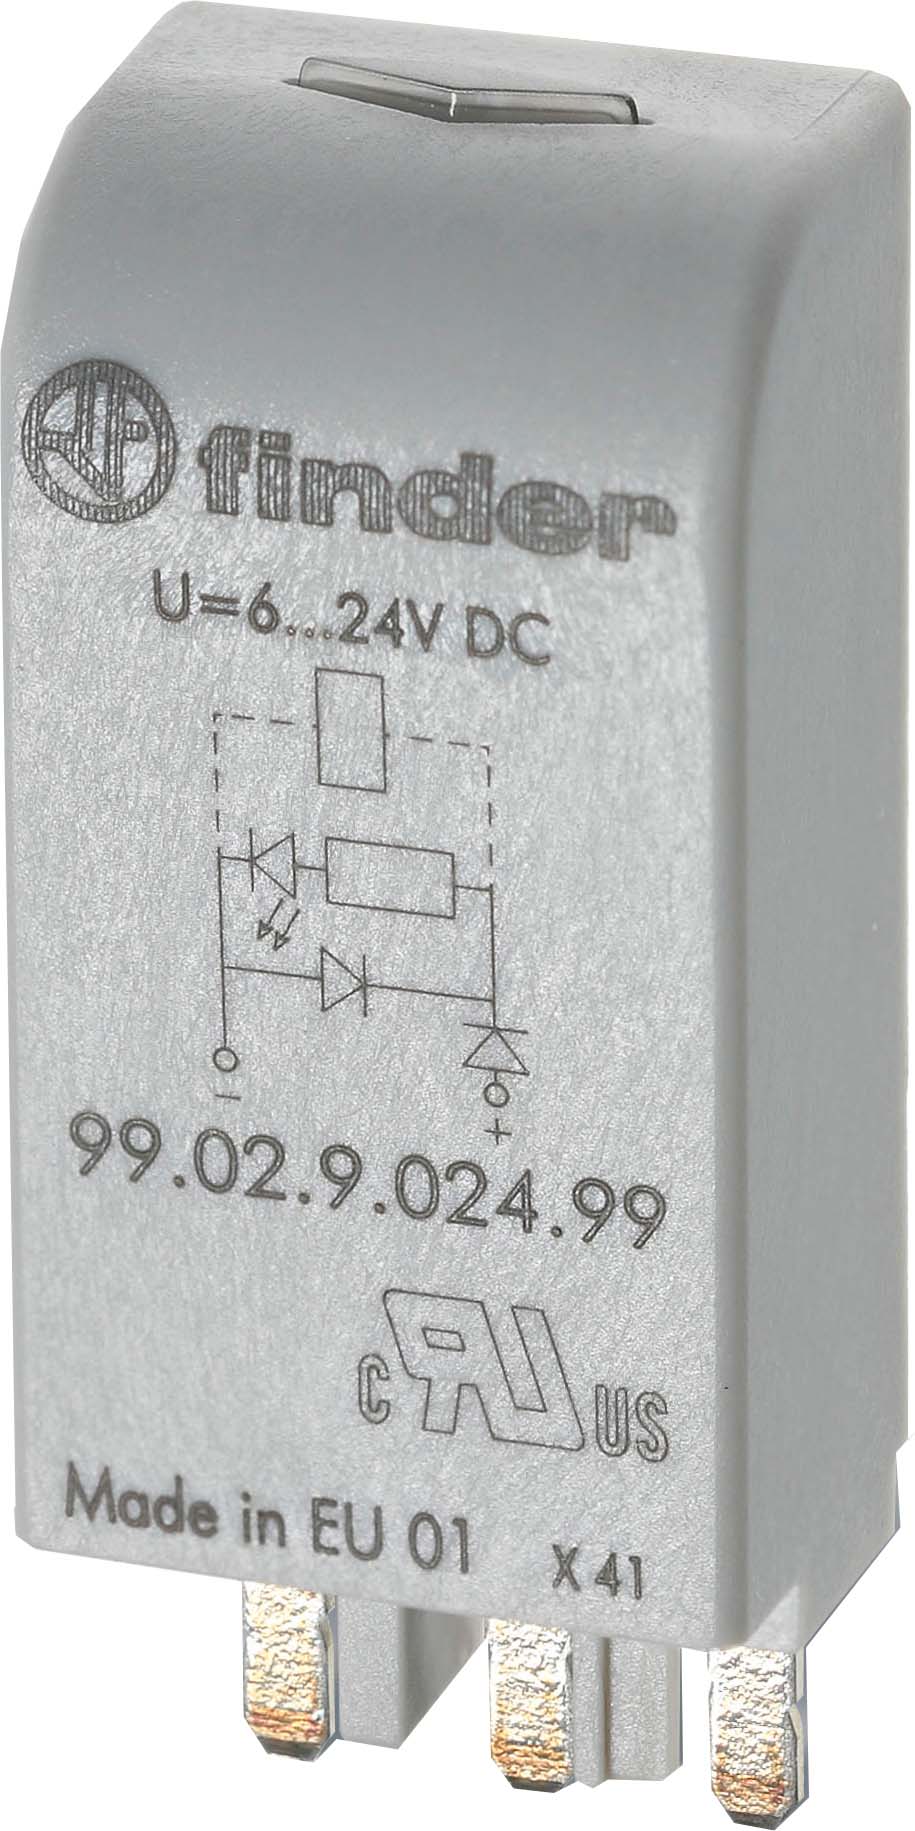 Finder LED gn + Varis 6..24VACDC f.Fas. 95.03/05 99.02.0.024.98